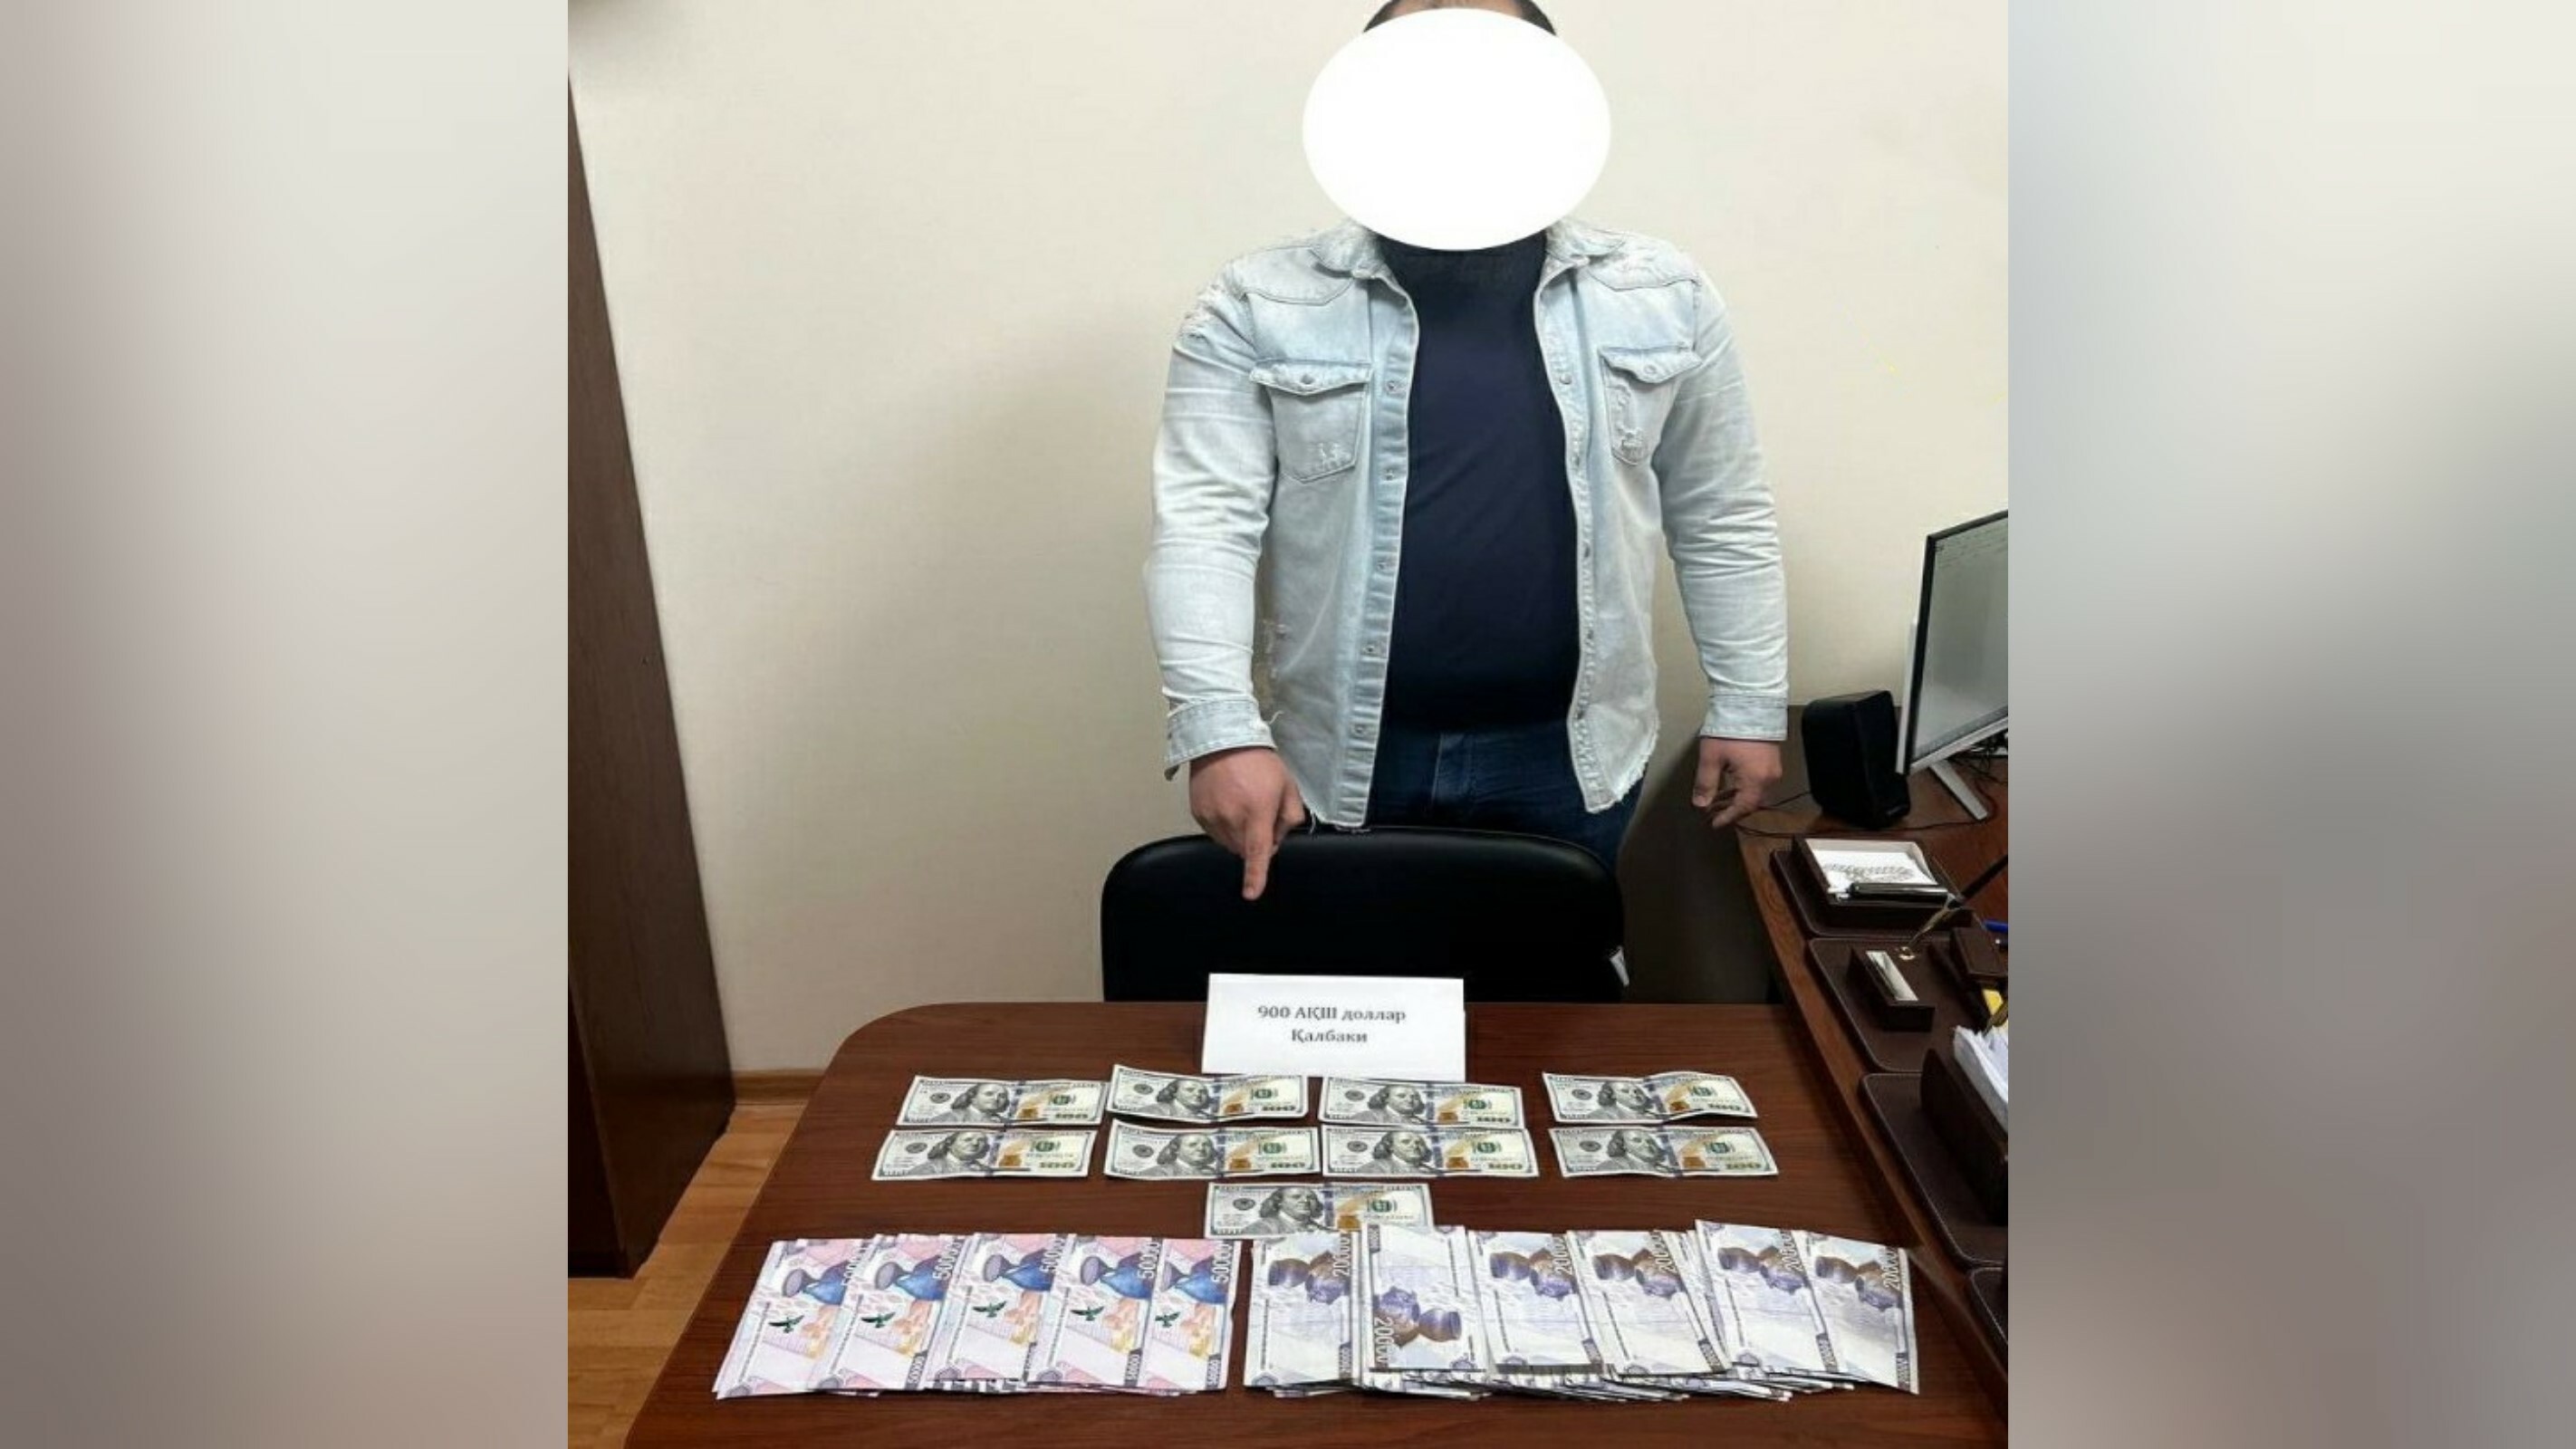 В Ташкенте задержан мужчина, пытавшийся обменять фальшивые доллары